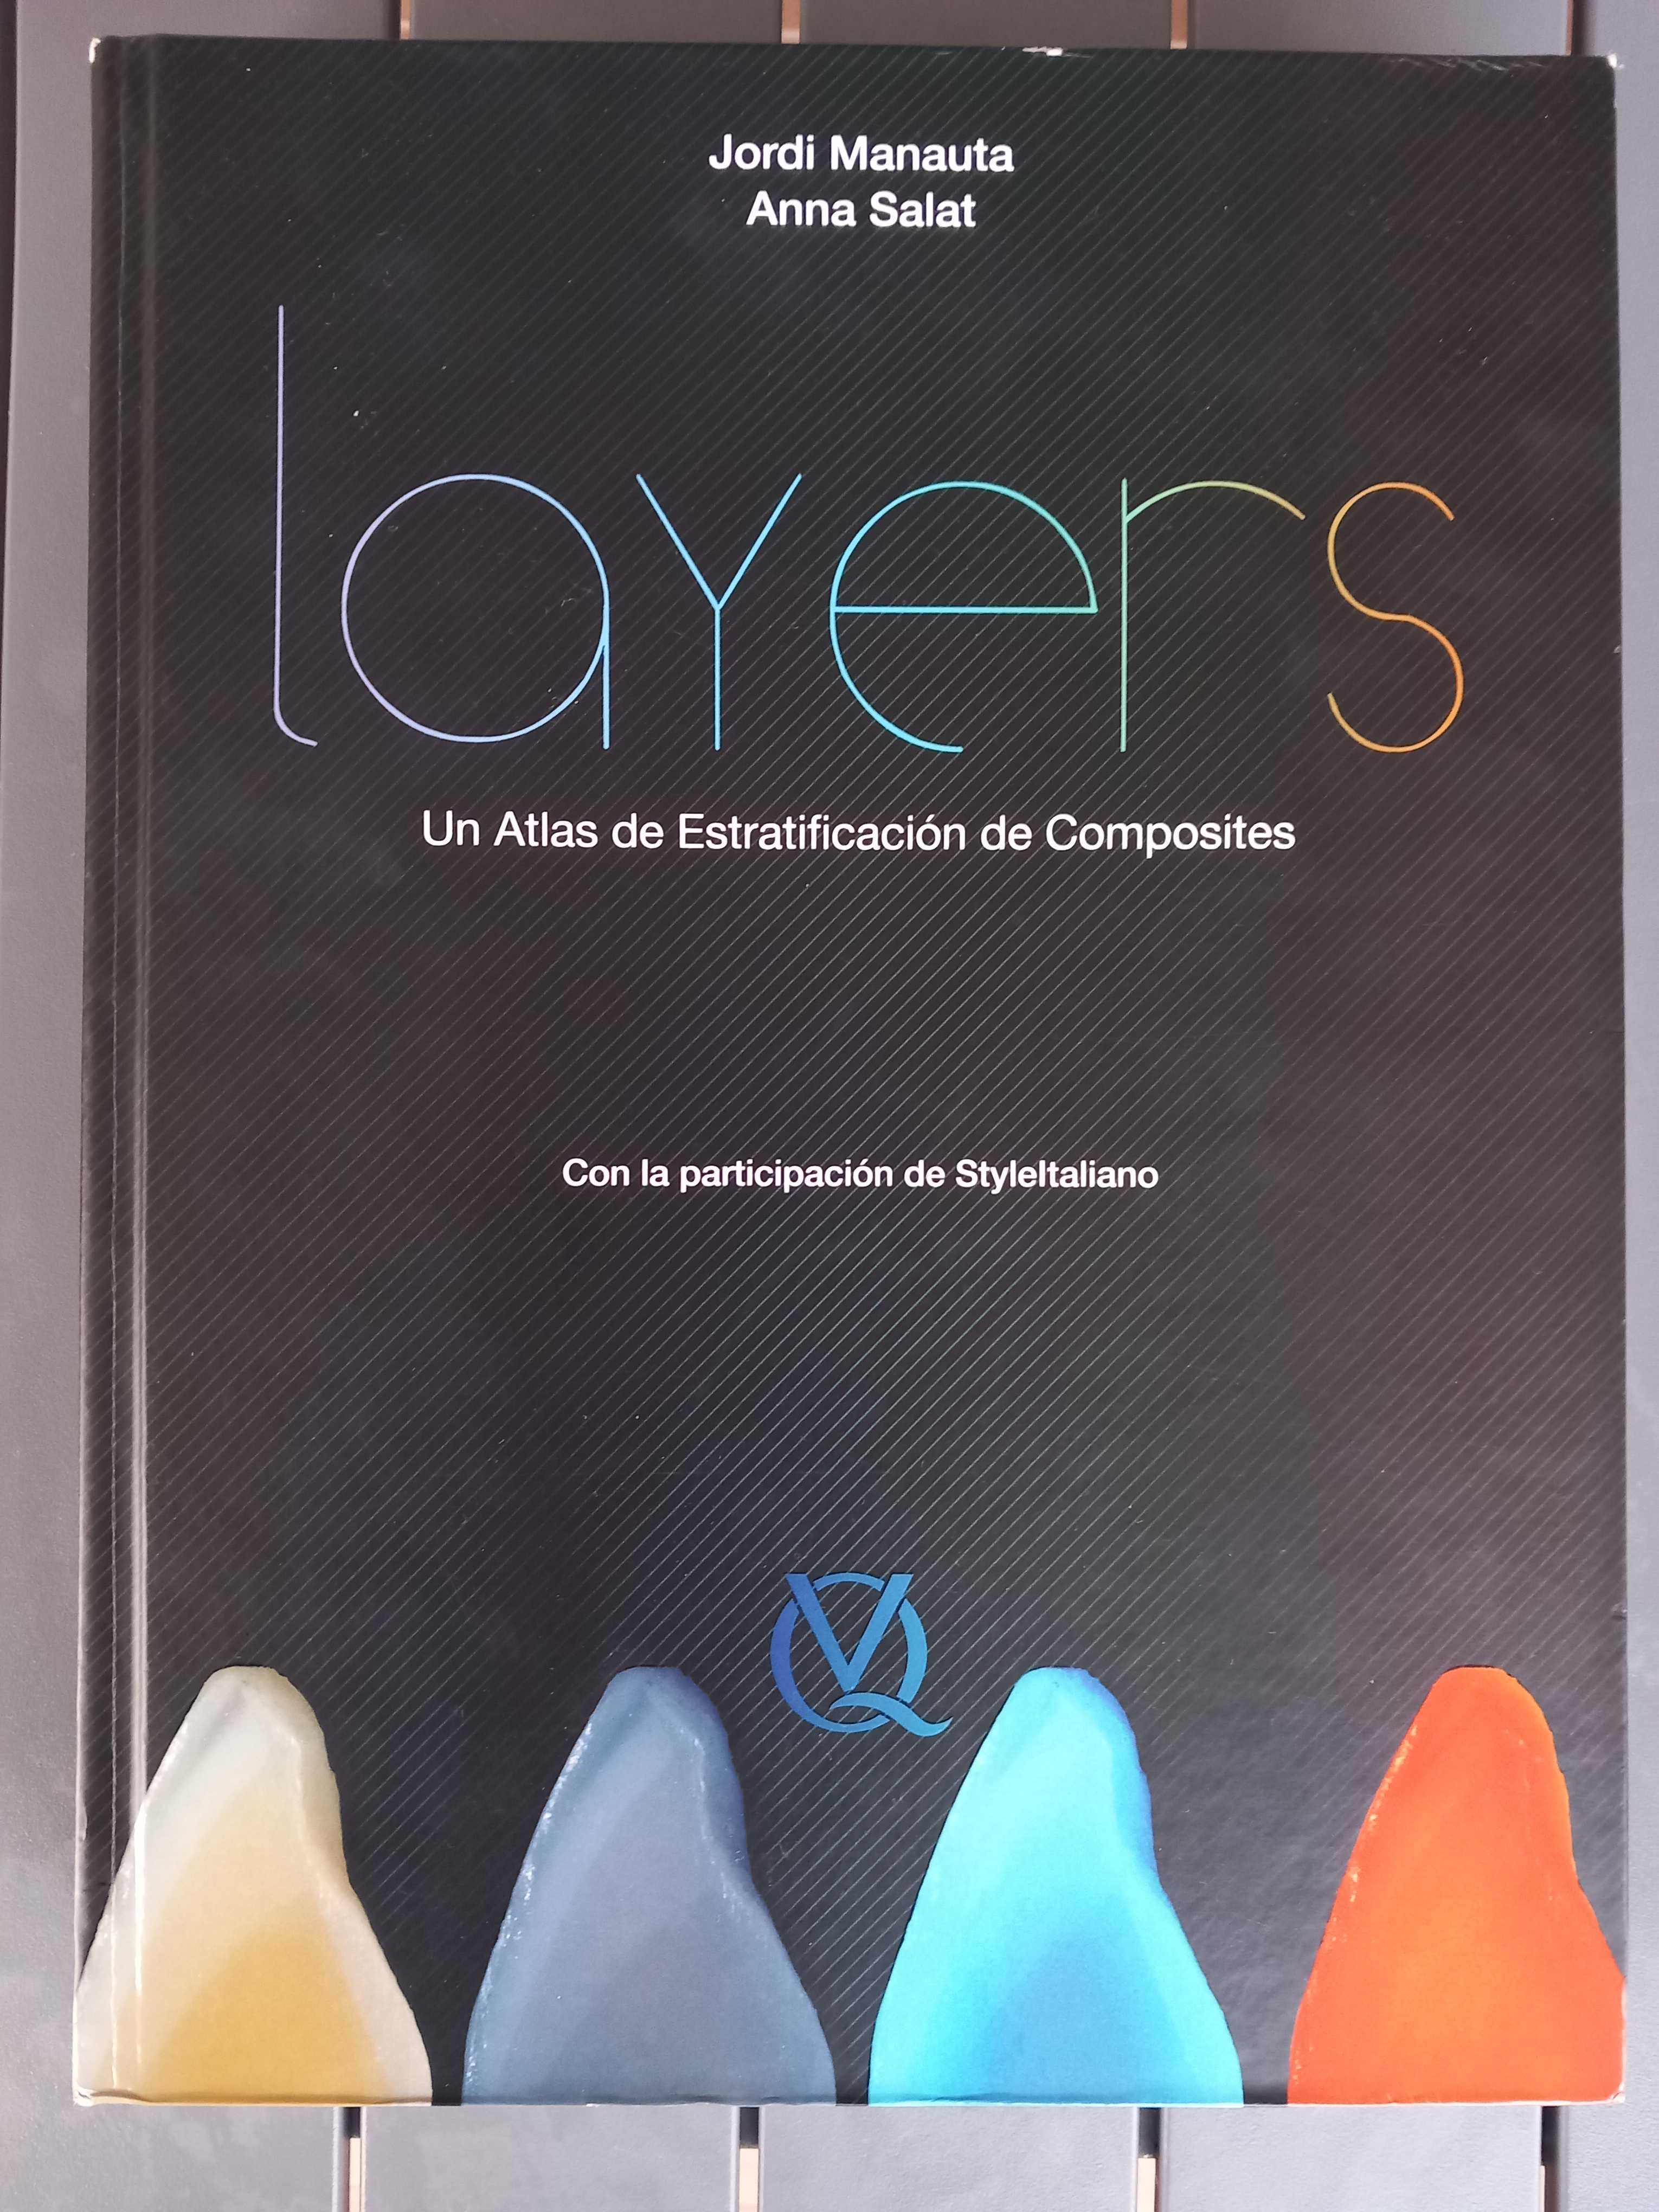 LAYERS, Un Atlas de Estratificación de Composites